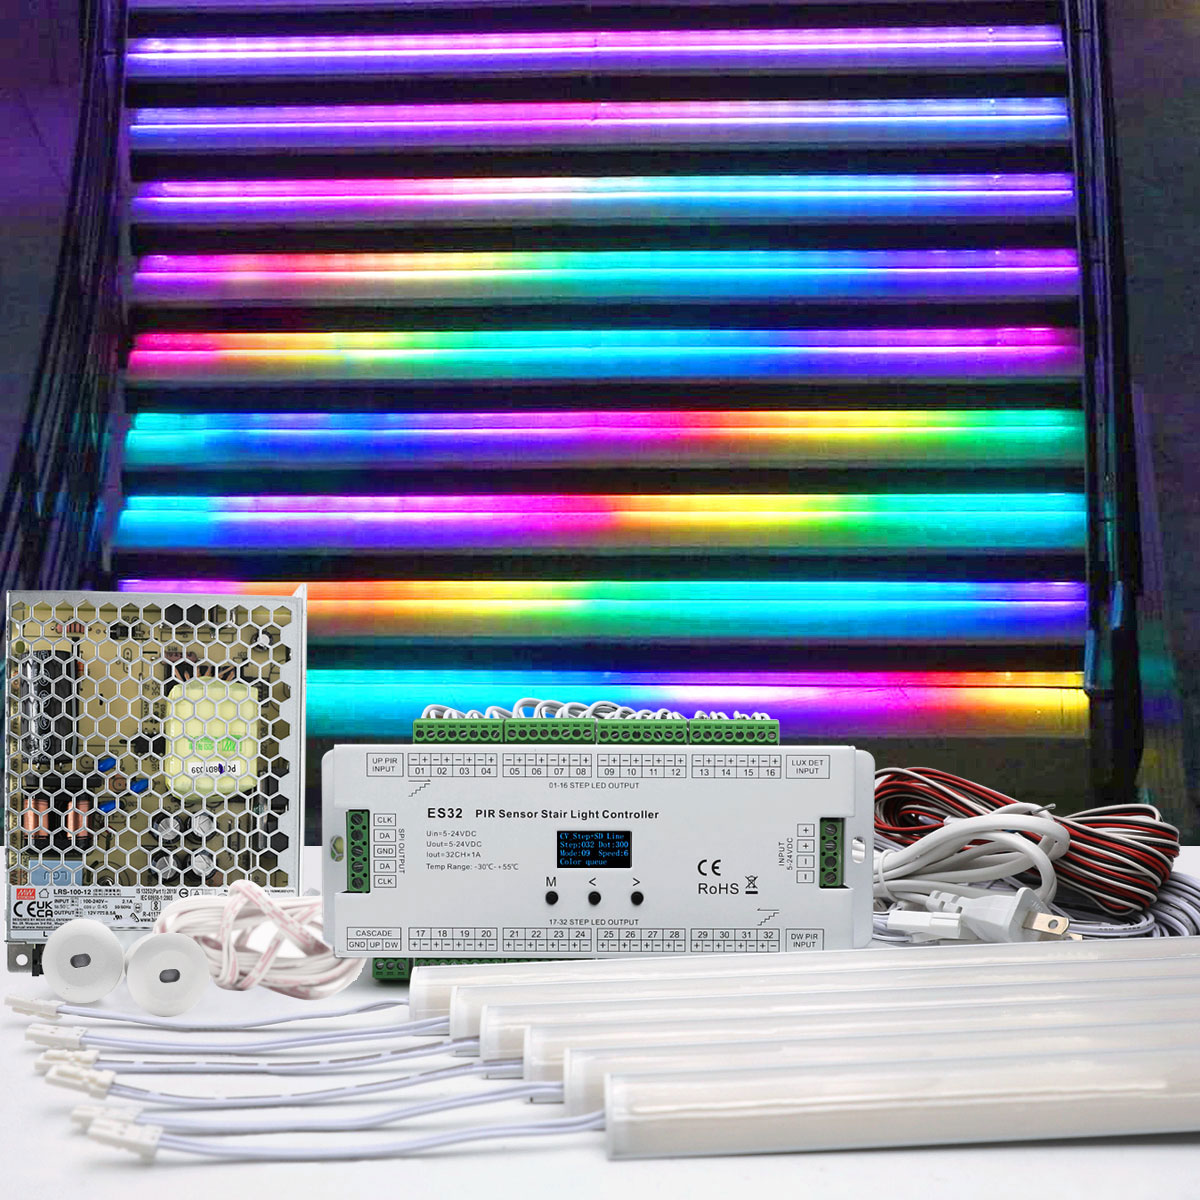 http://www.superlightingled.com/images/led%20strip%20light%20kit/Addressable-RGB-Color-Chasing-Motion-Sensor-Stair-Lights-Indoor-Kit.jpg